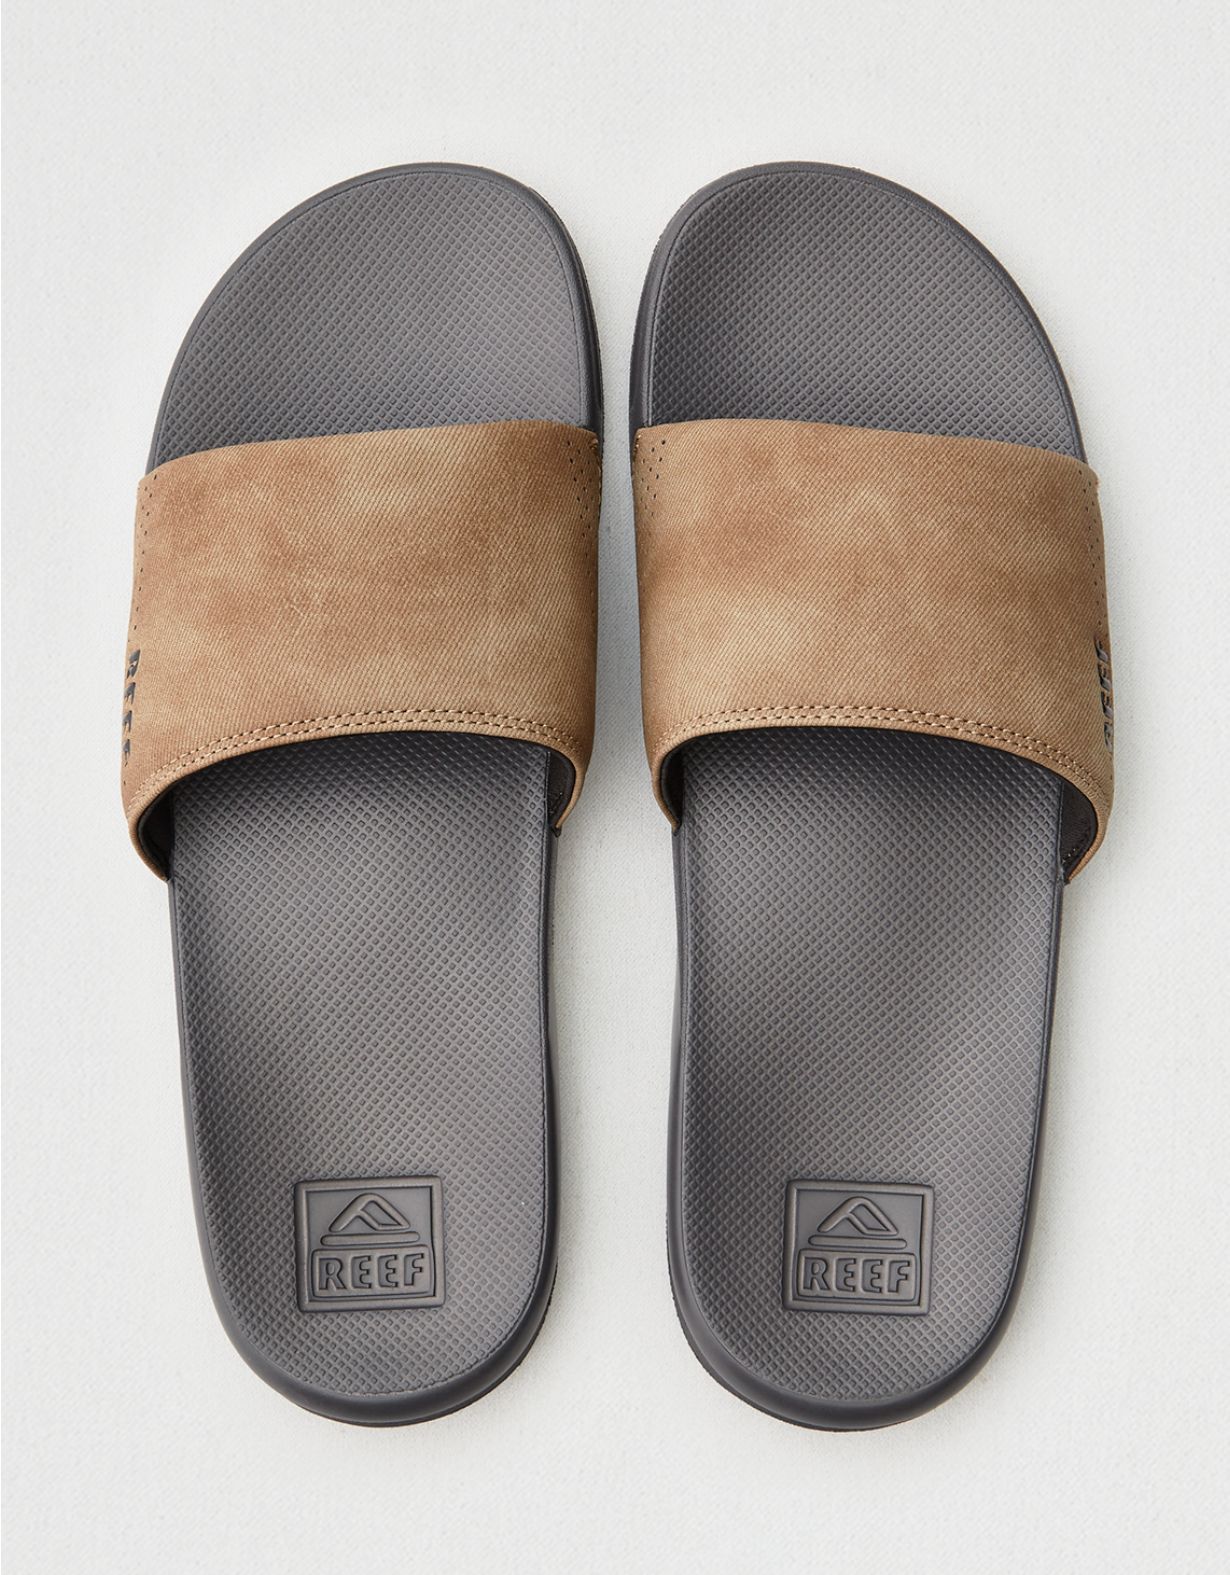 Olive Reef One Slides for Men Comfortable Mens Slides Sandals Size